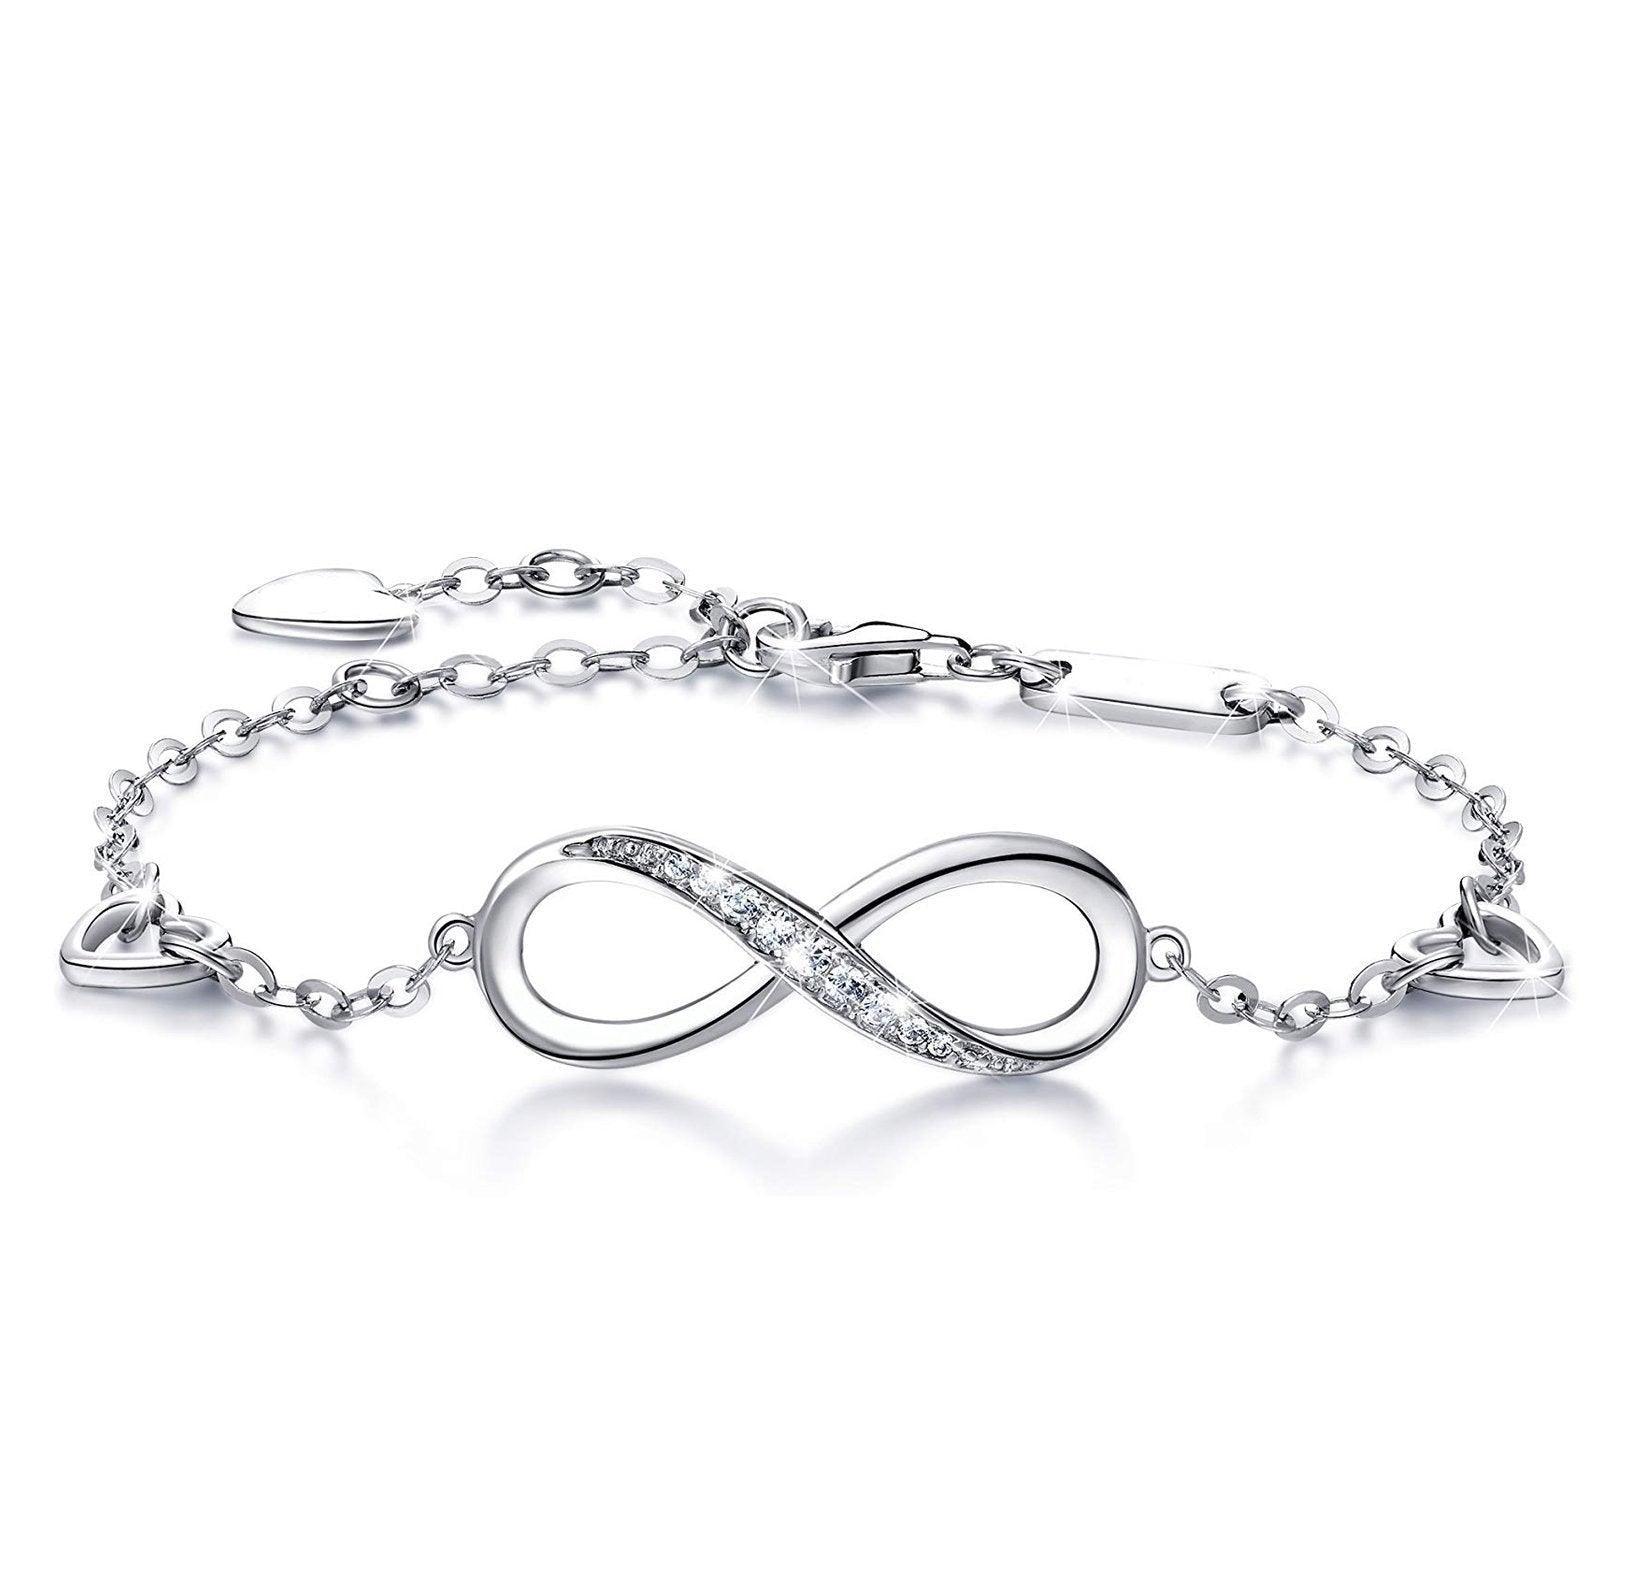 Women's Jewelry - Bracelets White Elements Infinite Pendant Chain Bracelet In 14K White...